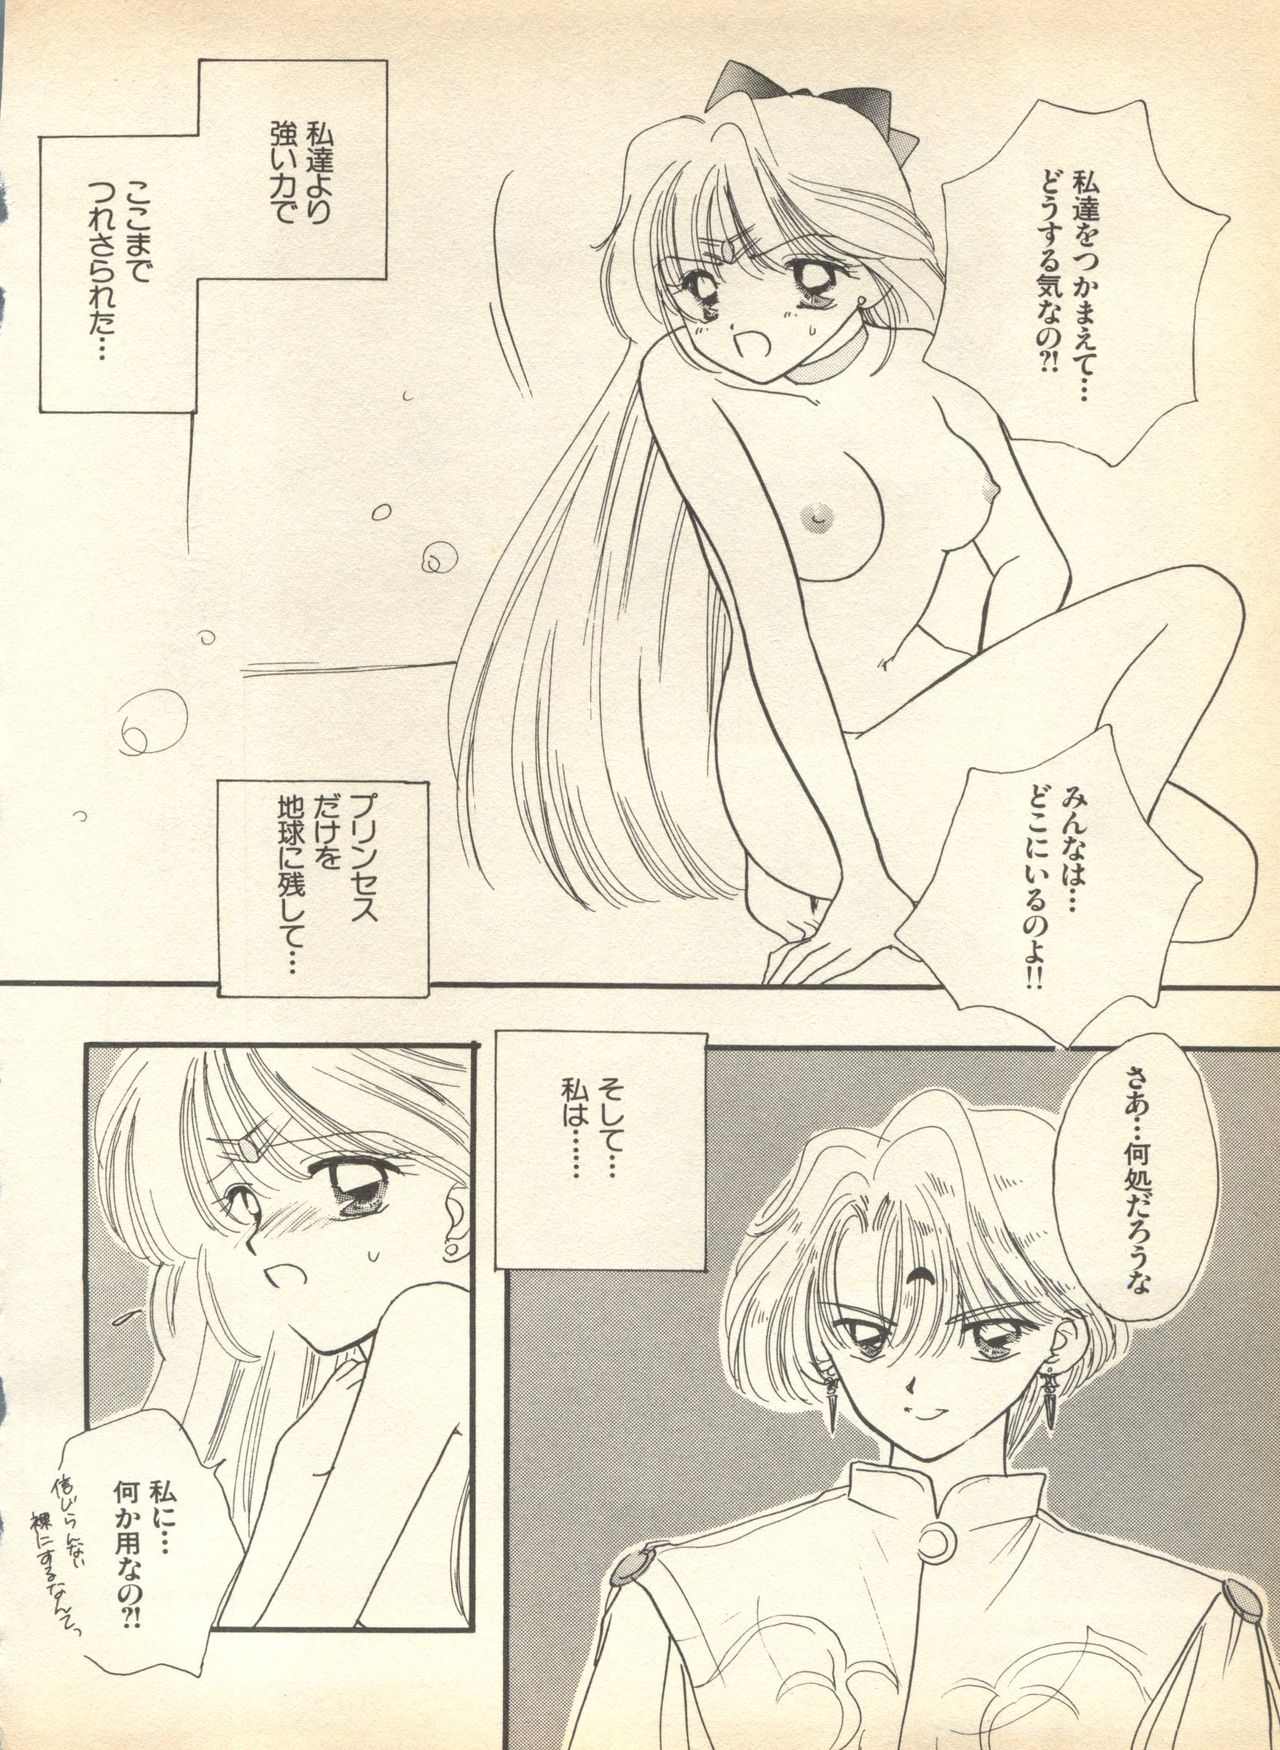 [Anthology] Lunatic Party 7 (Bishoujo Senshi Sailor Moon) 163